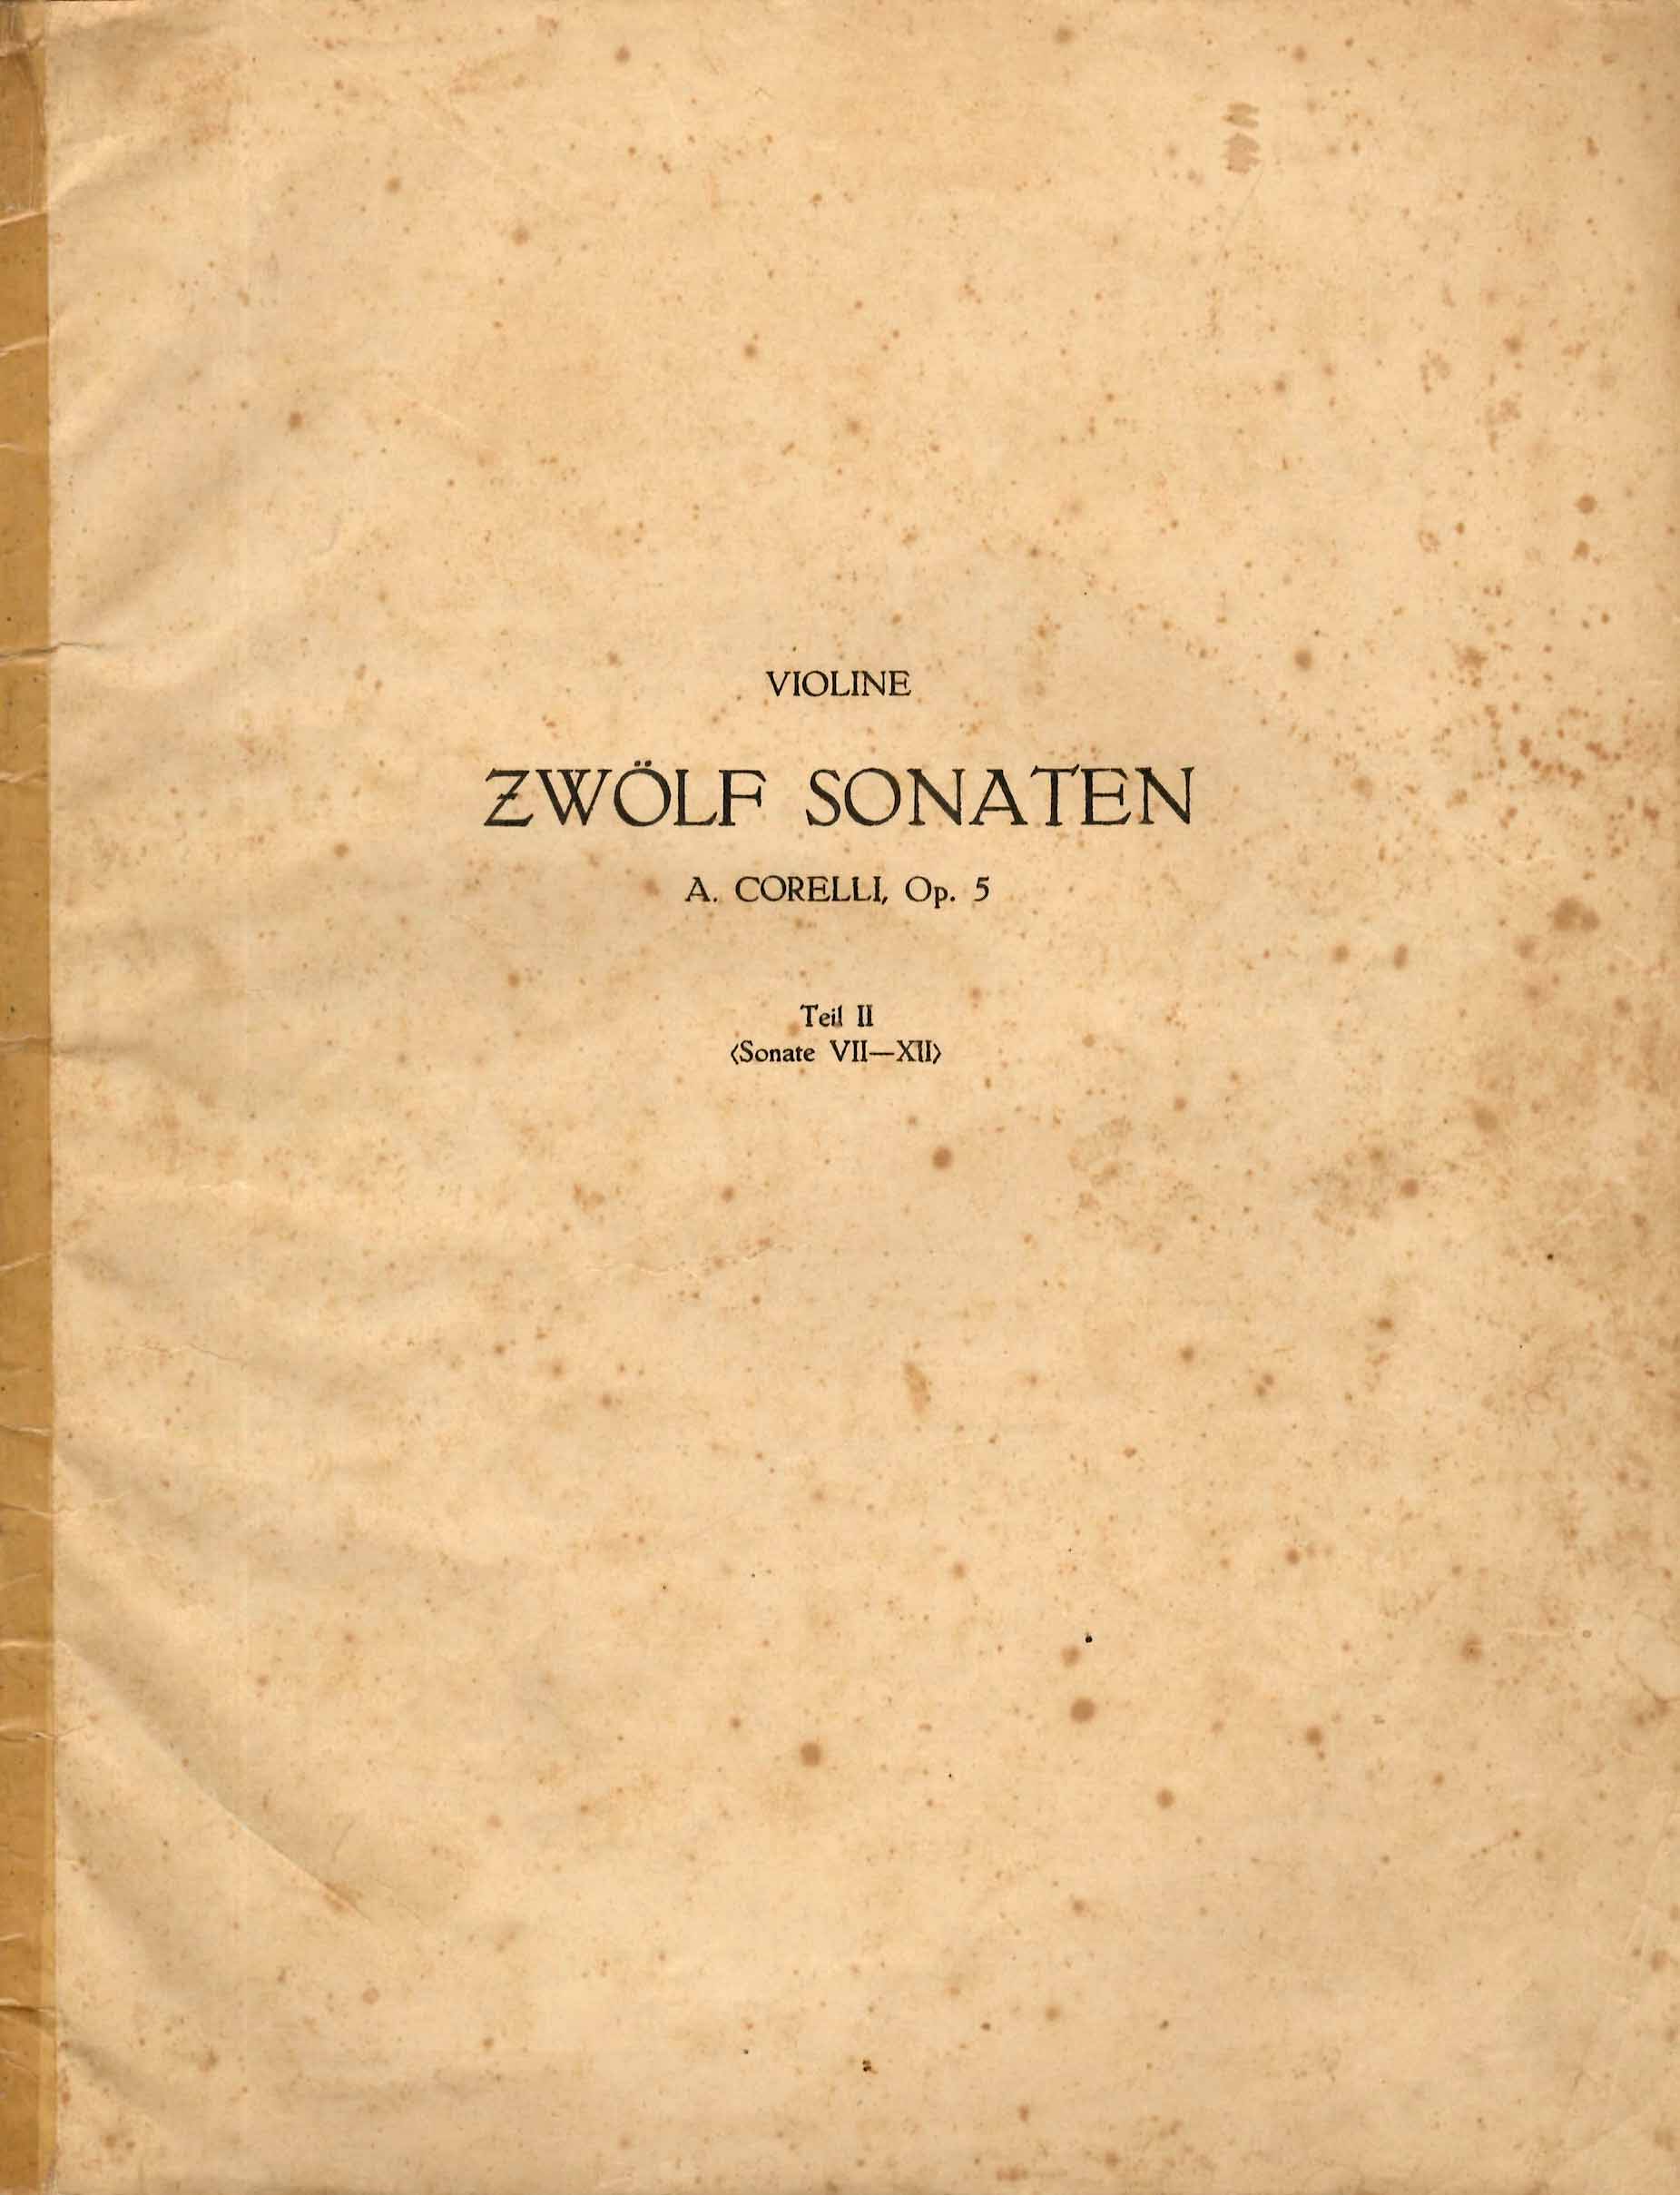 Zwolf Sonaten, op. 5 (Sonate VII-XII)